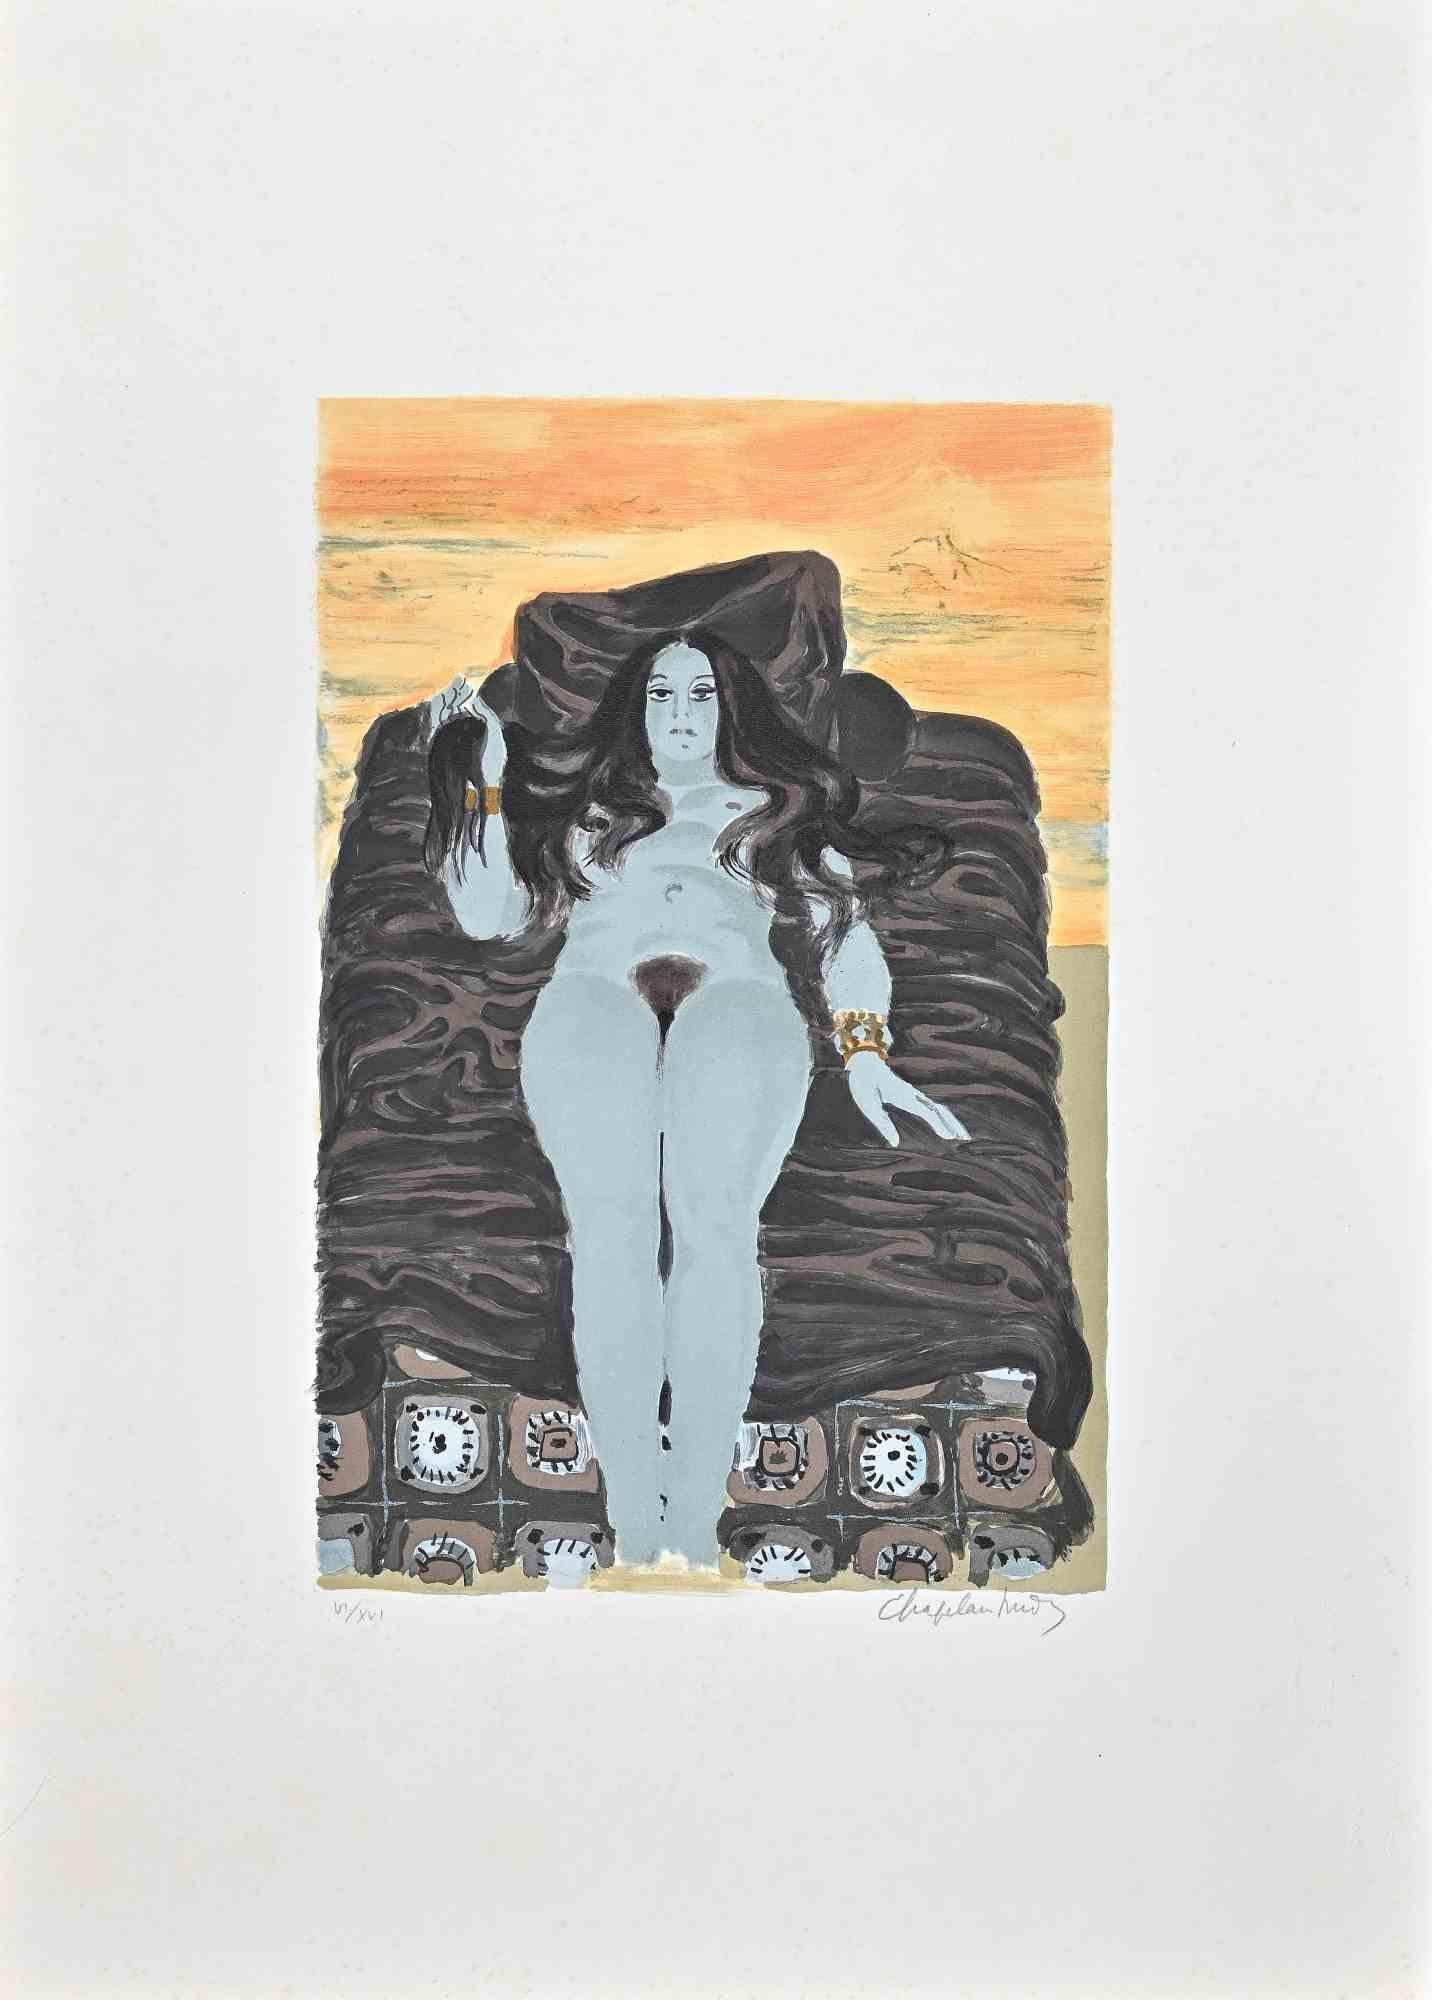 Der Rest  ist eine farbige Original-Lithographie des Künstlers Roger Chapelain-Midy aus den 1970er Jahren.

Vom Künstler rechts unten handsigniert. Links unten nummeriert. Ausgabe VI/XVI.

Das Kunstwerk stellt eine nackte Frau dar, die sich hinlegt